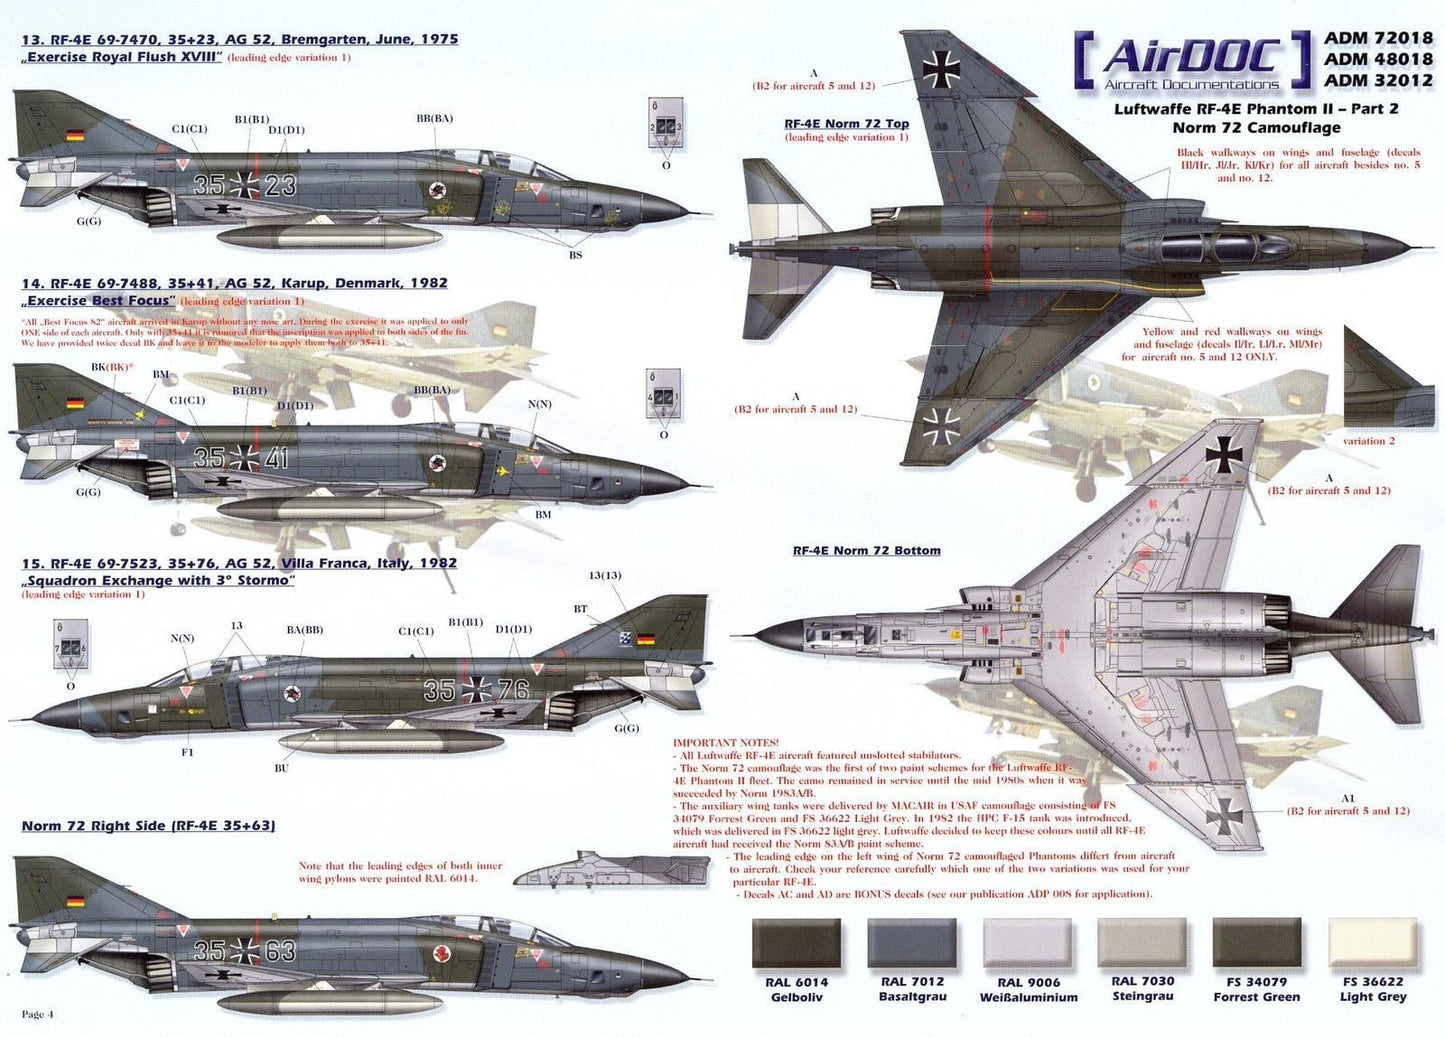 Airdoc ADM48018 1/48 McDonnell RF-4E Phantoms Luftwaffe Part 2 Decals ...